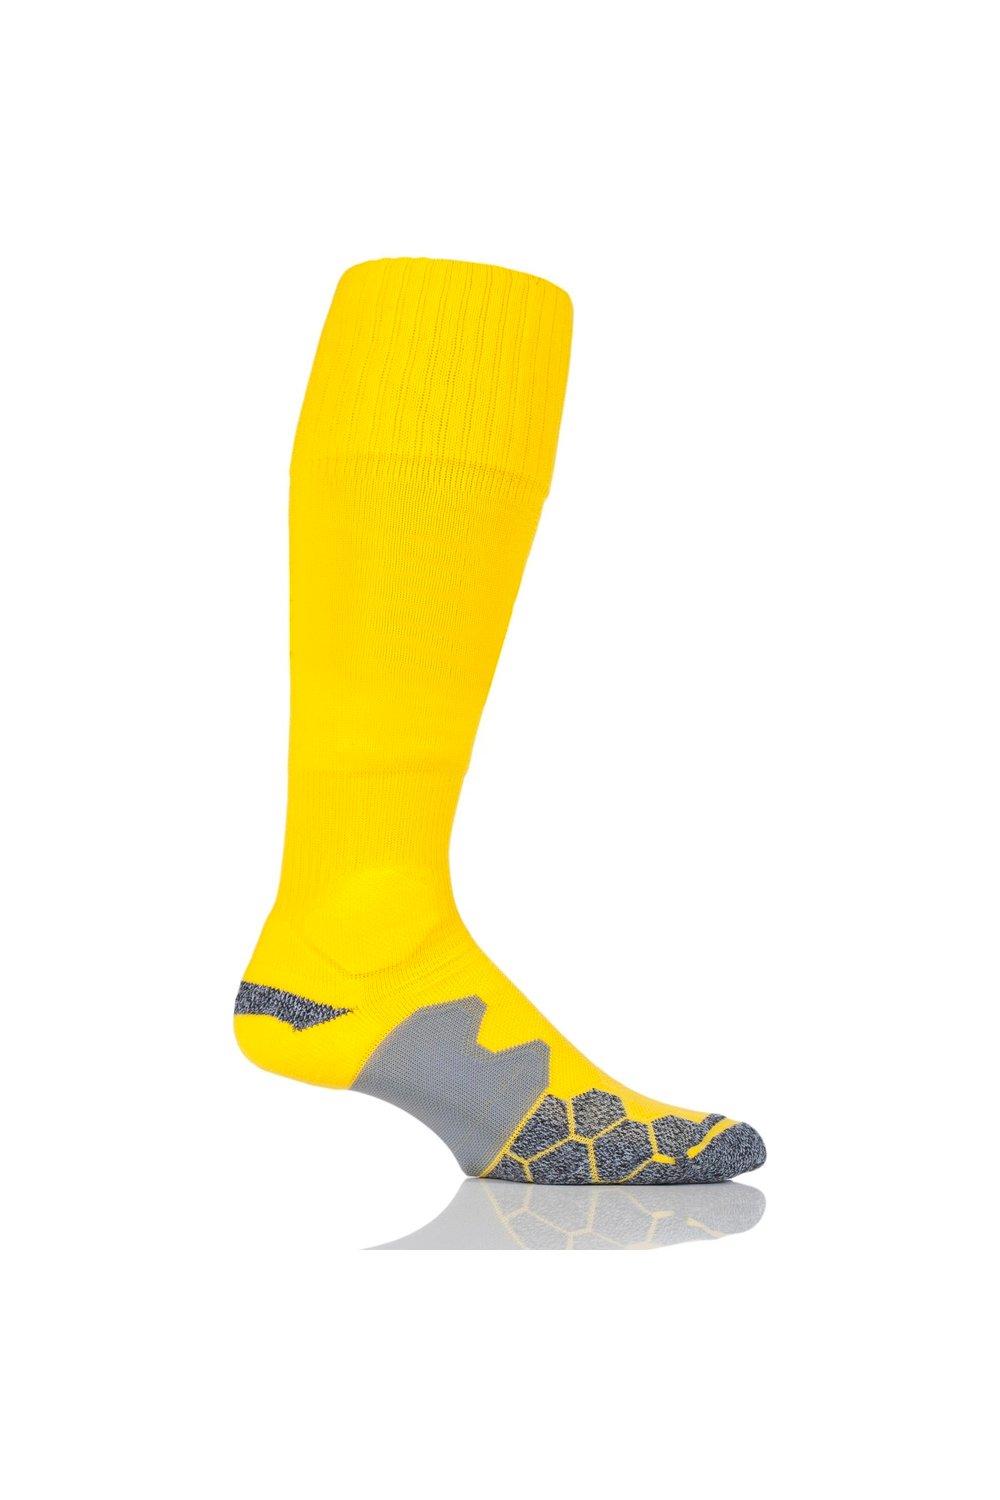 1 пара технических футбольных носков с мягкой подкладкой, произведенных в Великобритании SOCKSHOP of London, желтый